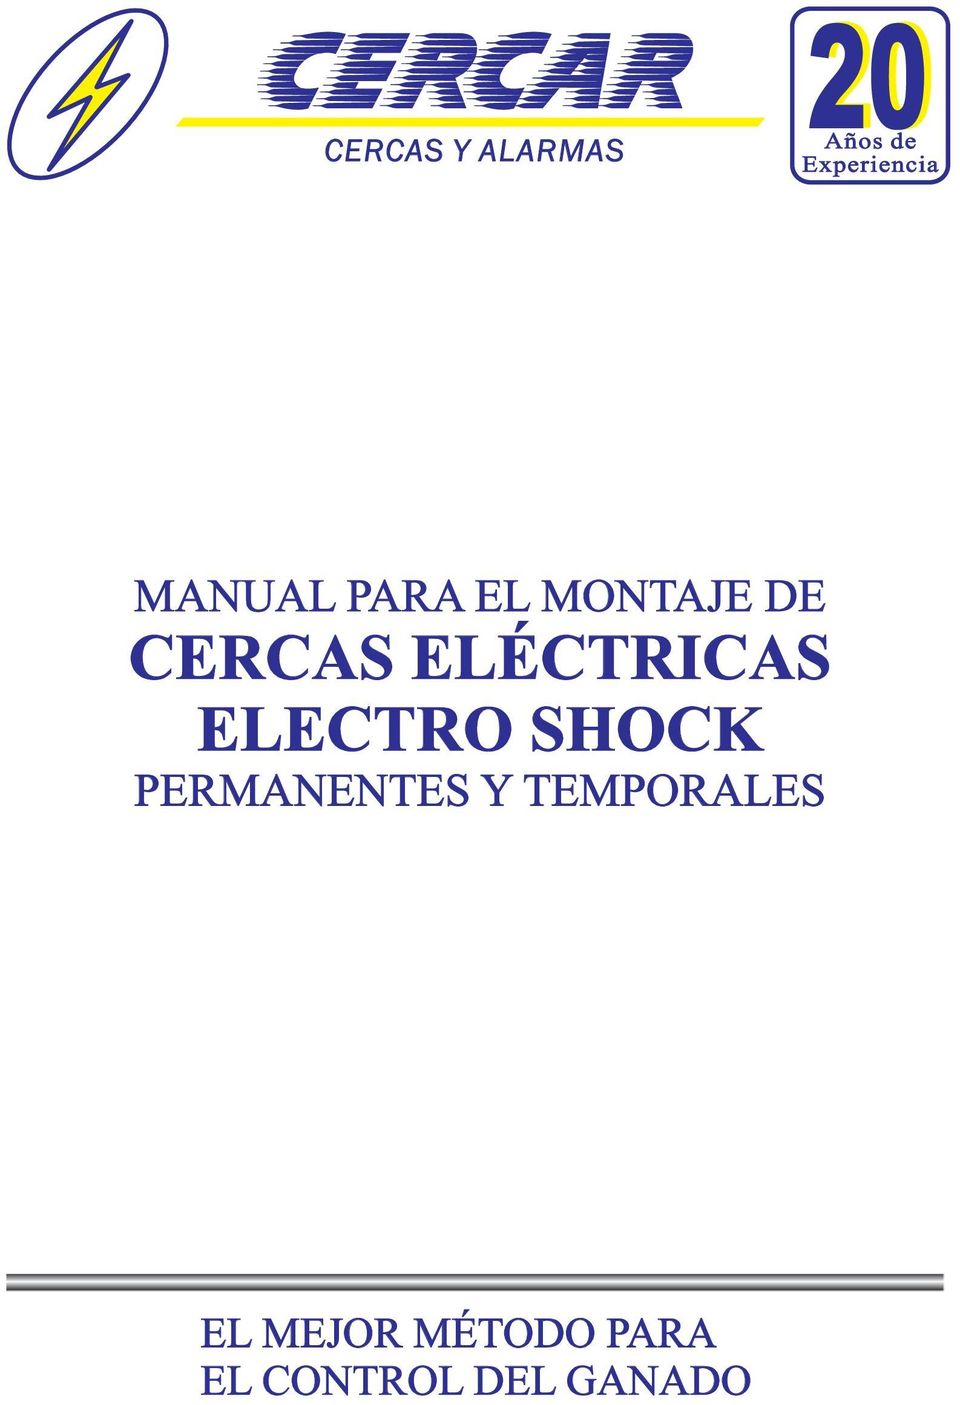 ELÉCTRICAS ELECTRO SHOCK PERMANENTES Y